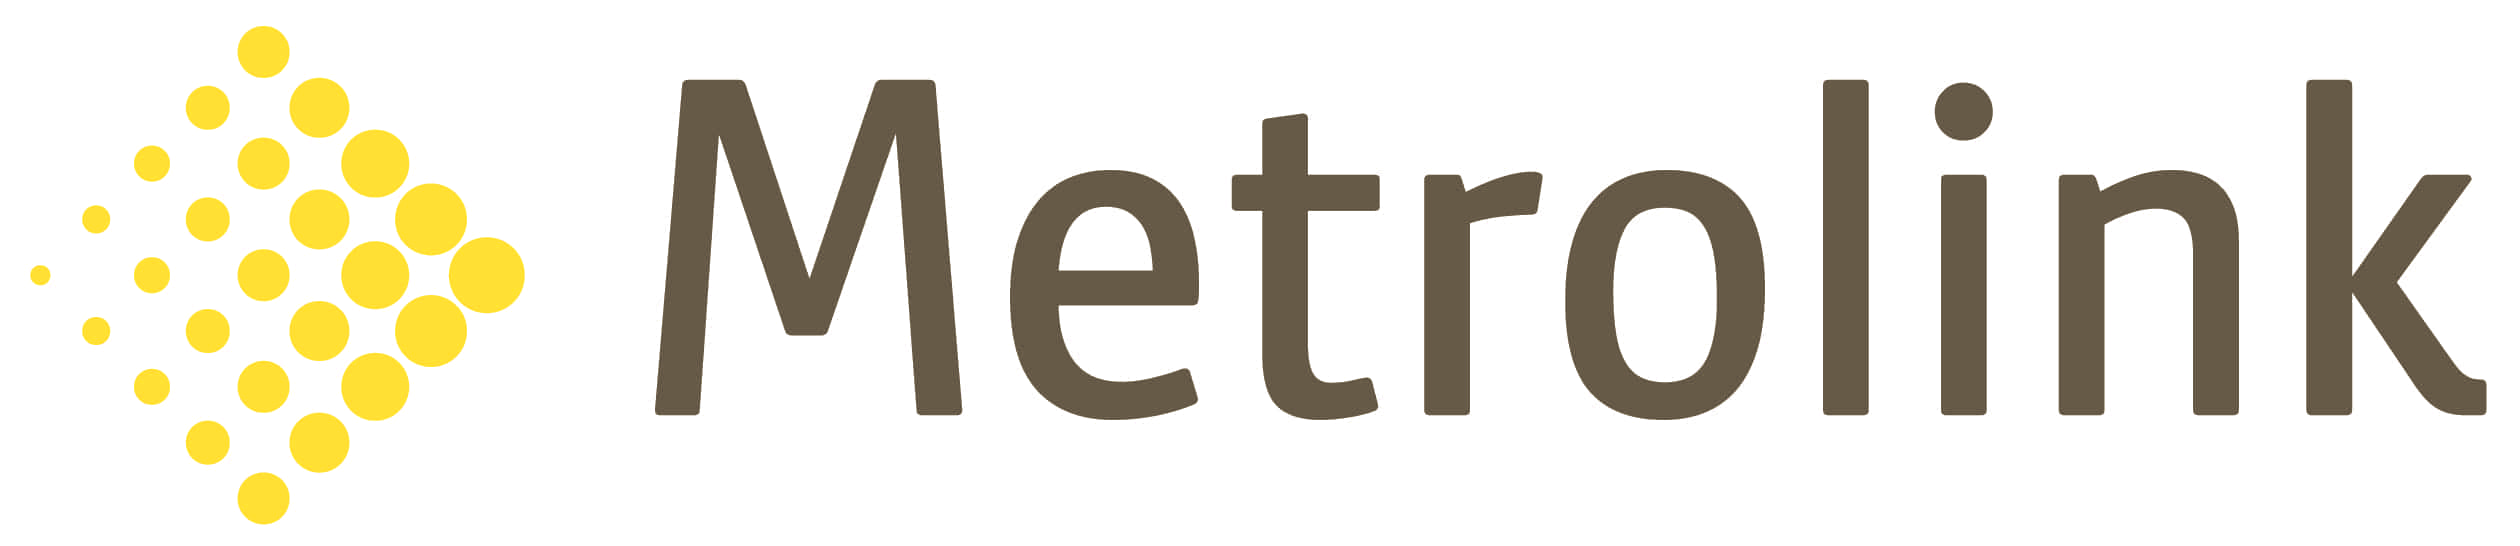 Metrolink Logo - Metrolink Special Offer | Metrolink Special Offer